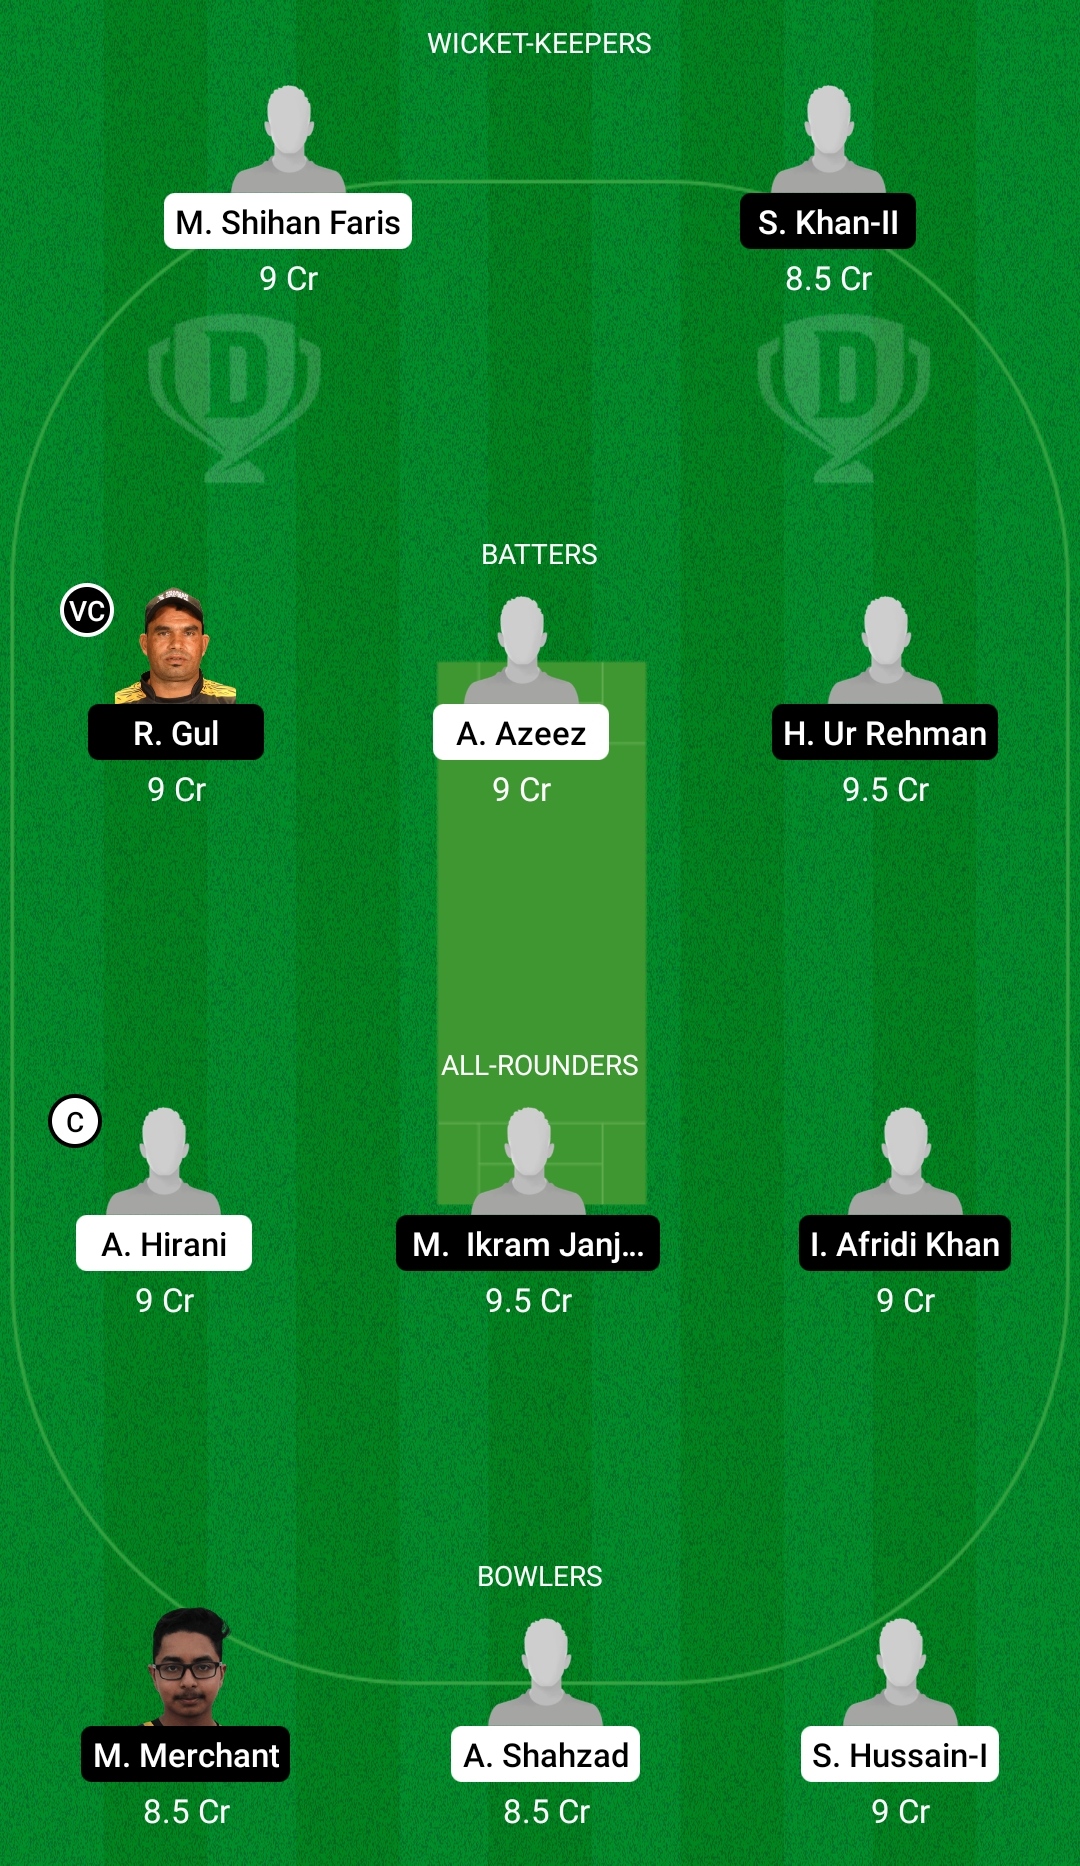 डीयूए बनाम एएमए ड्रीम11 भविष्यवाणी काल्पनिक क्रिकेट टिप्स ड्रीम11 टीम शारजाह रमजान टी10 लीग 